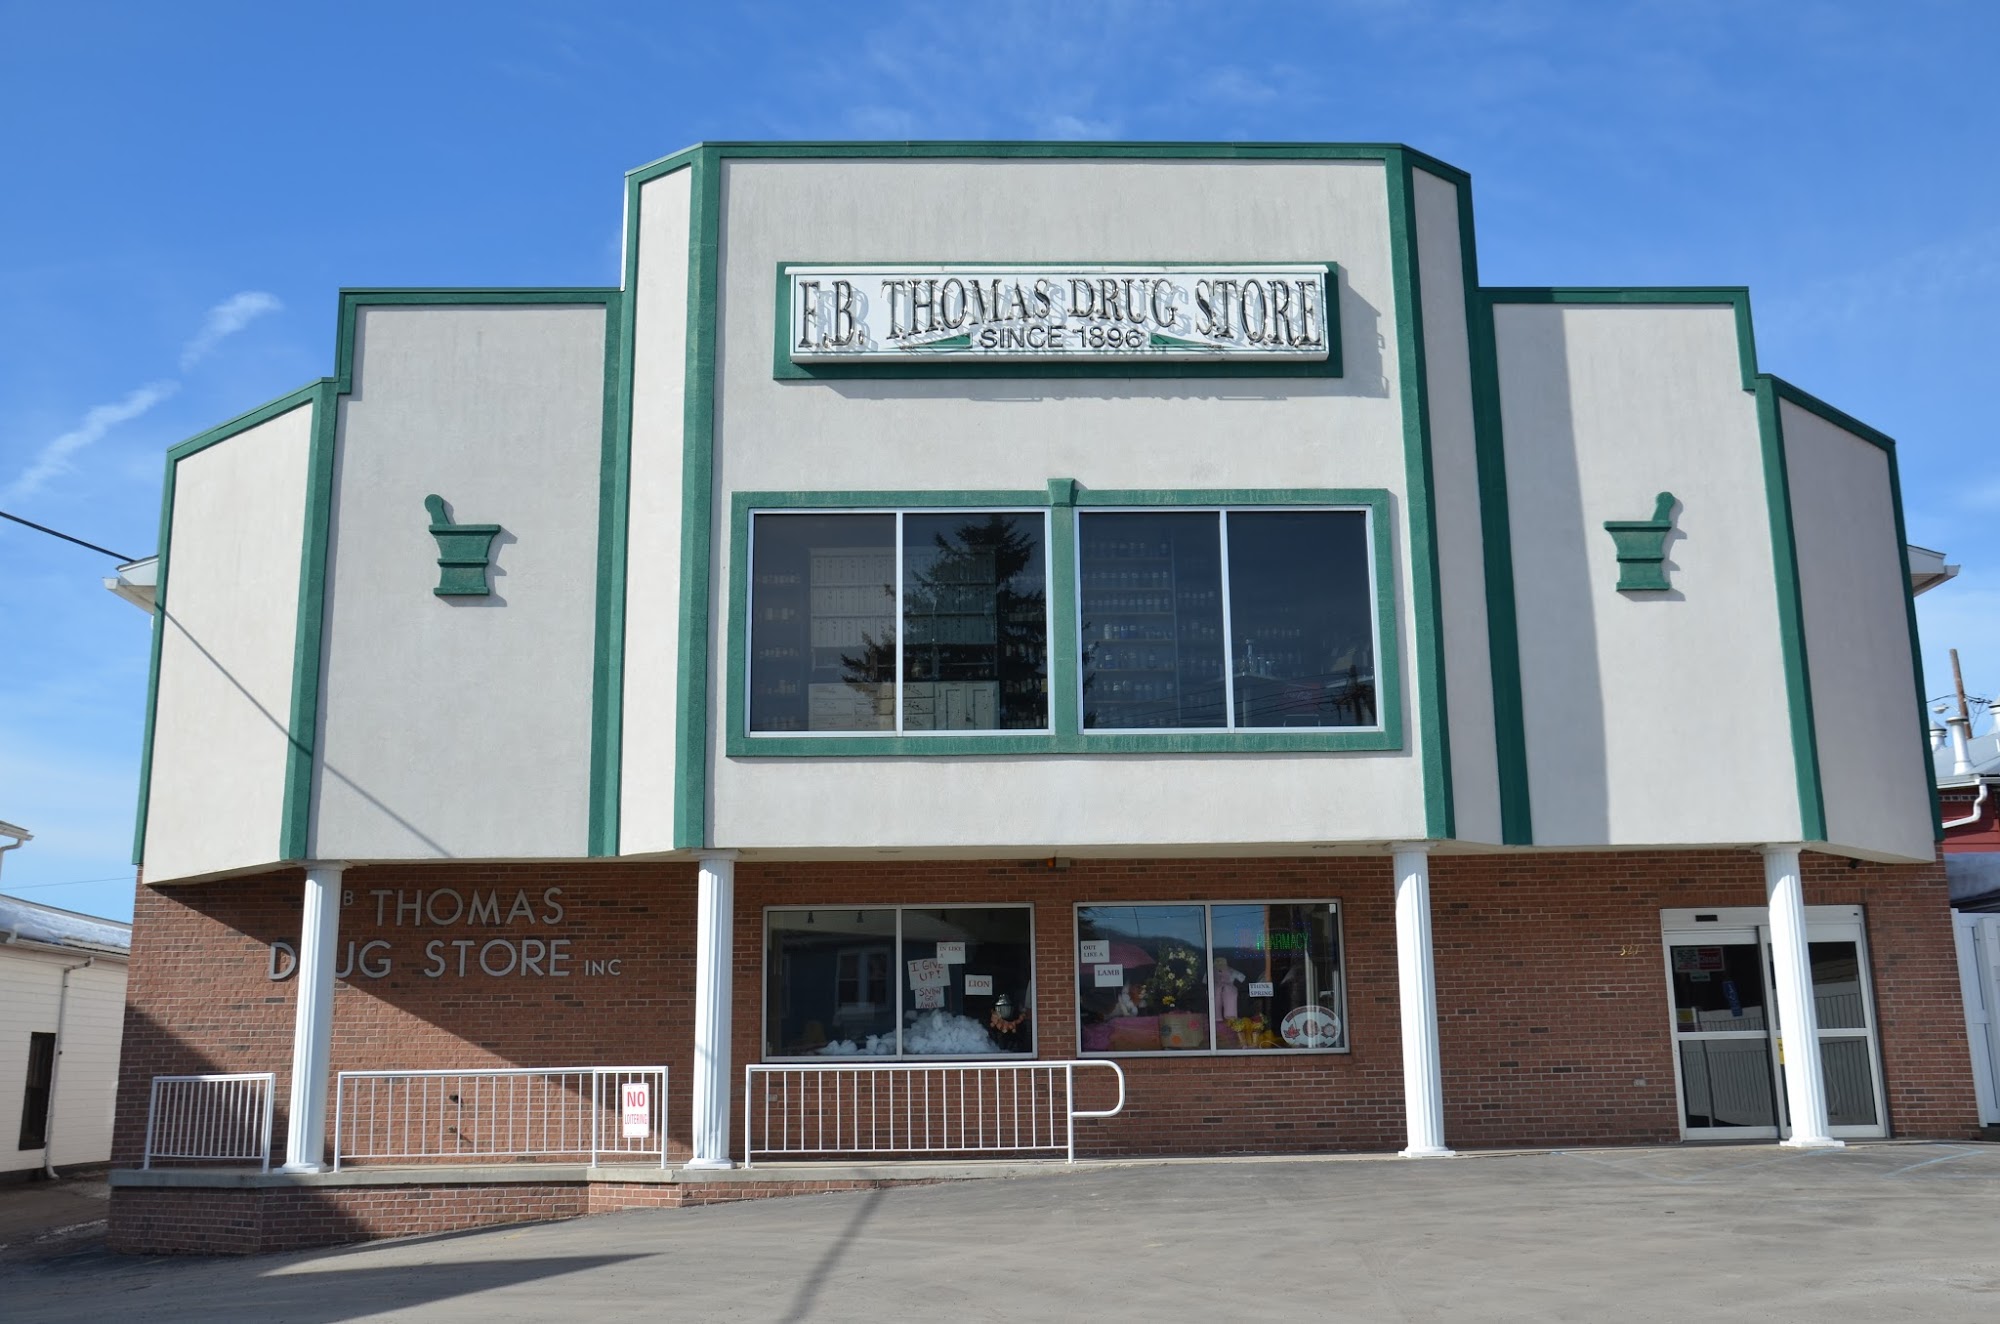 F.B. Thomas Drug Store